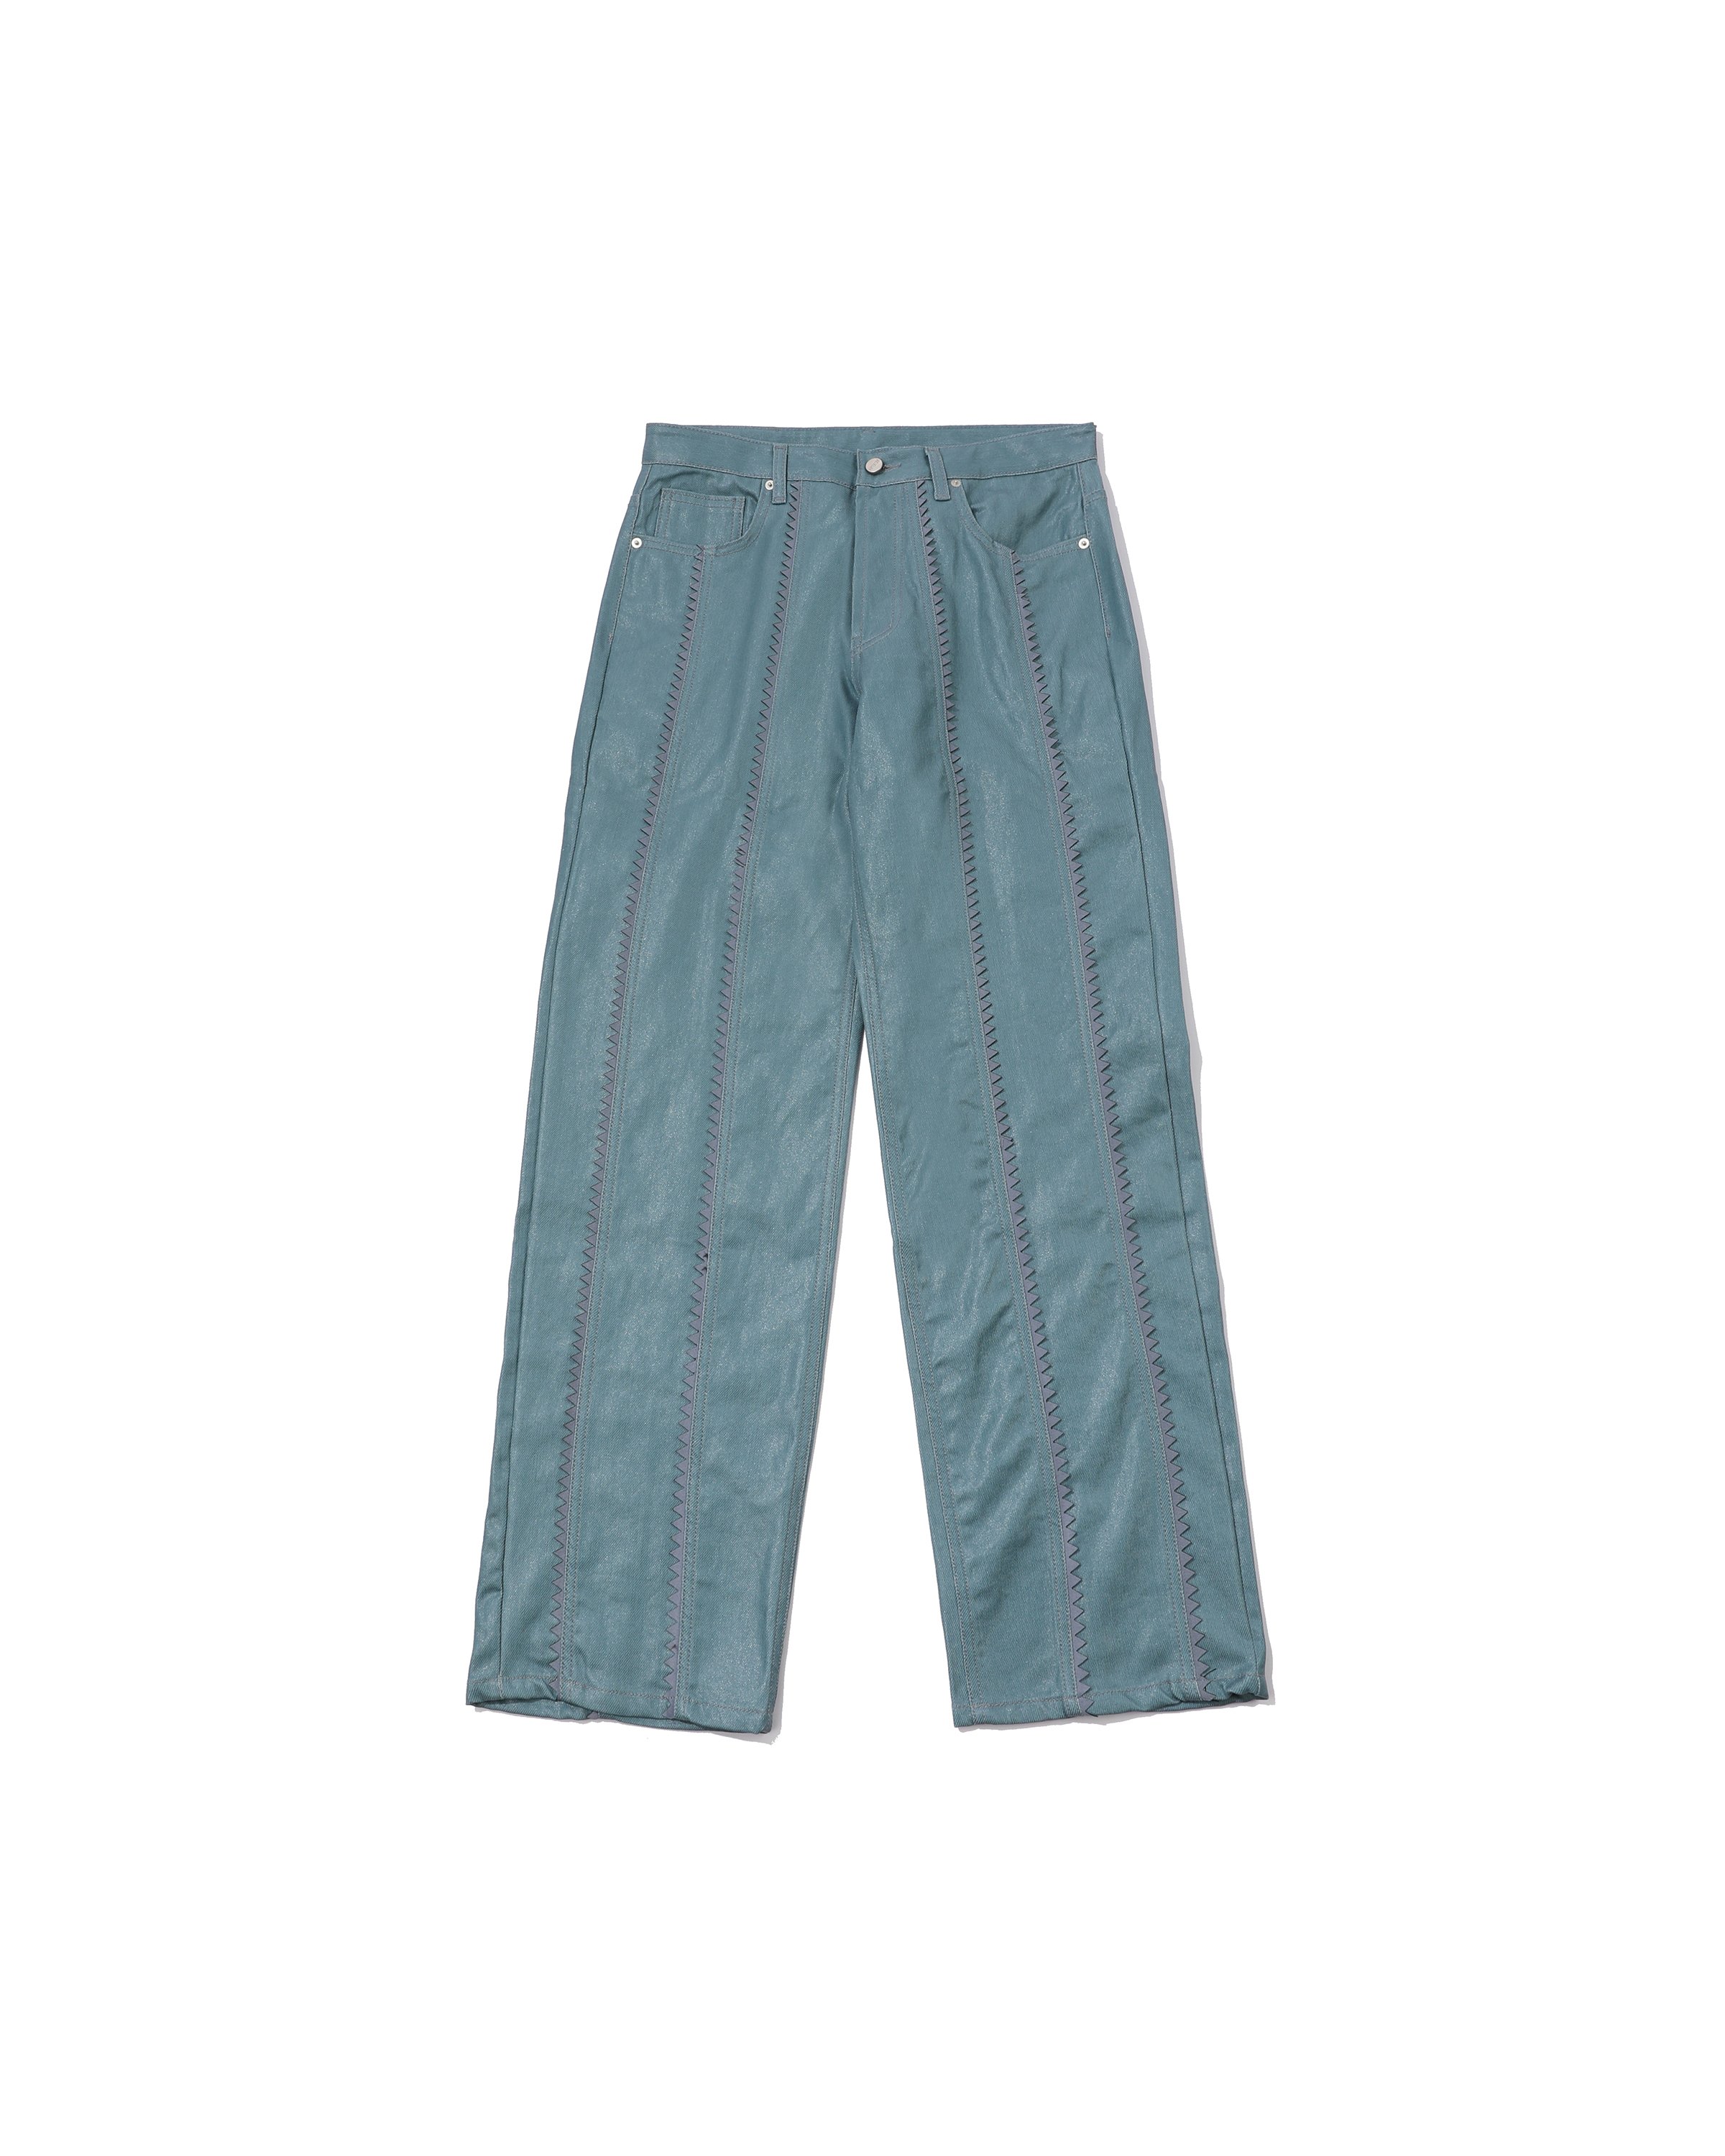 SAWTOOTH LINE COATED PANTS(BLUE)